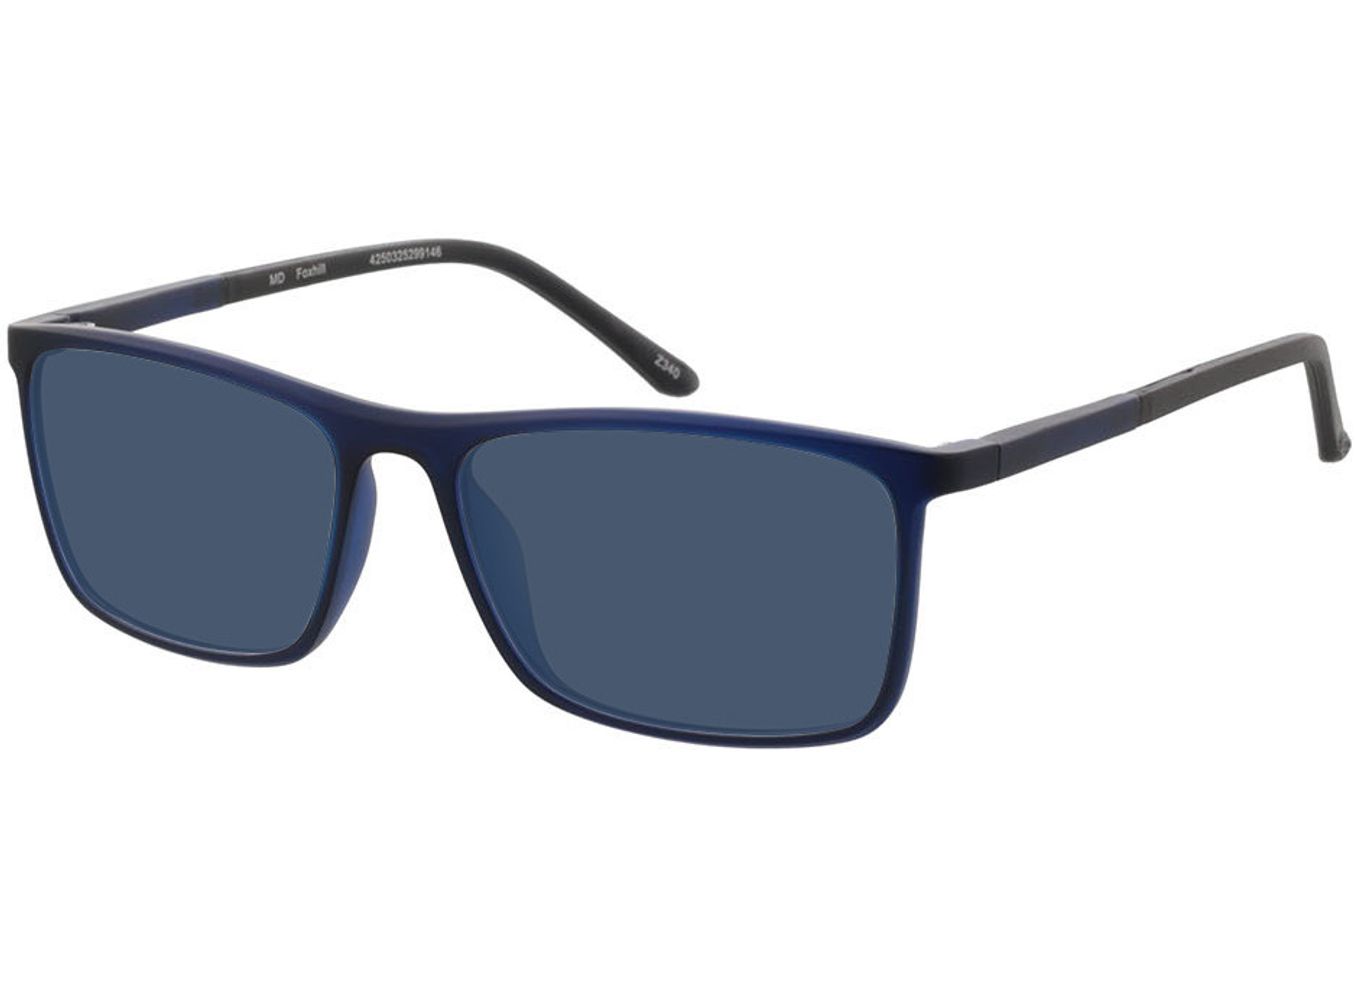 Foxhill - blau transparent/schwarz Sonnenbrille ohne Sehstärke, Vollrand, Rechteckig von Brille24 Collection